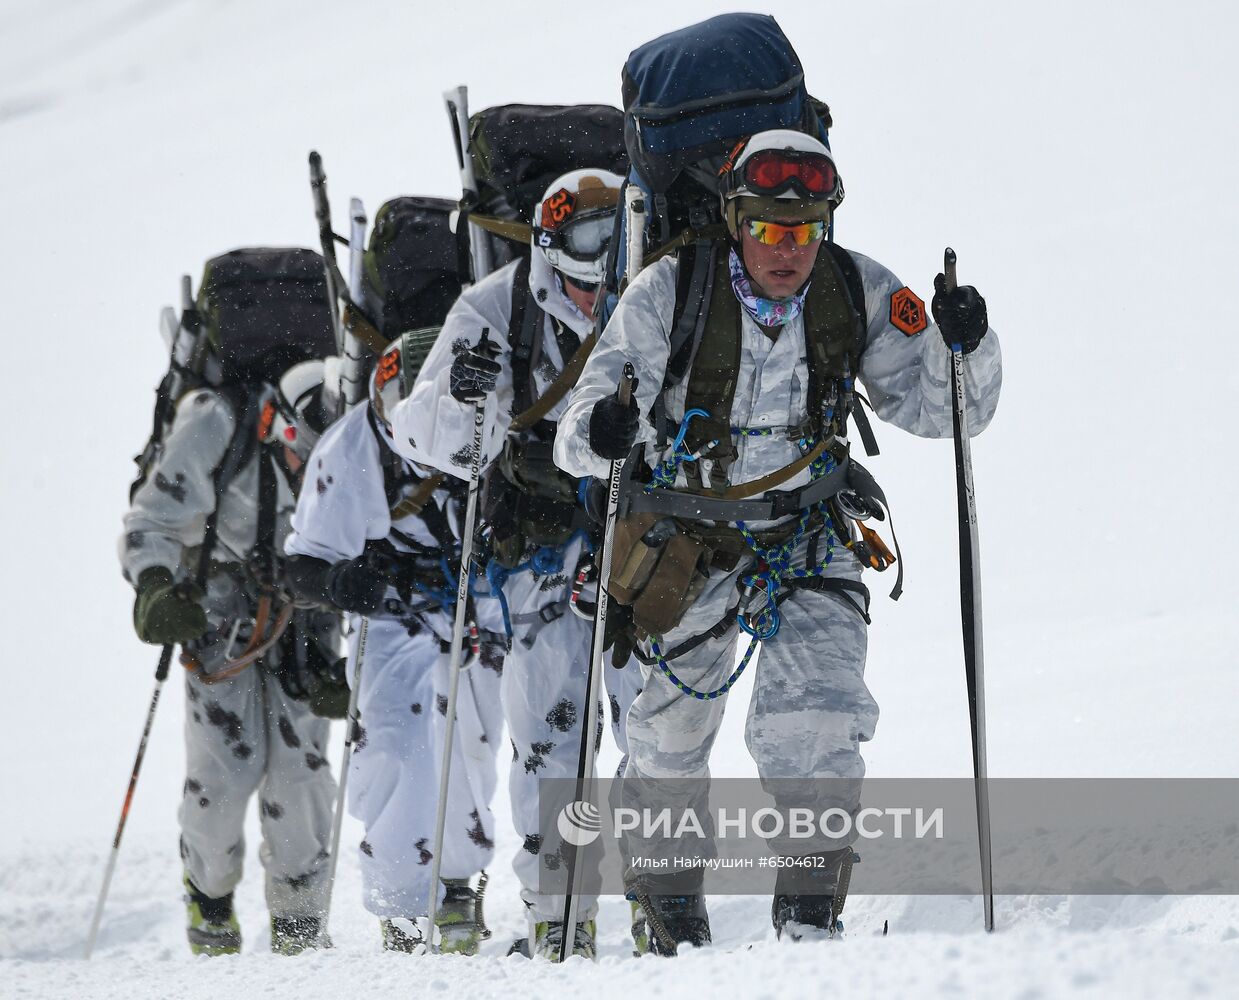 Всеармейский конкурс по ски-альпинизму "Саянский марш" в Красноярском крае